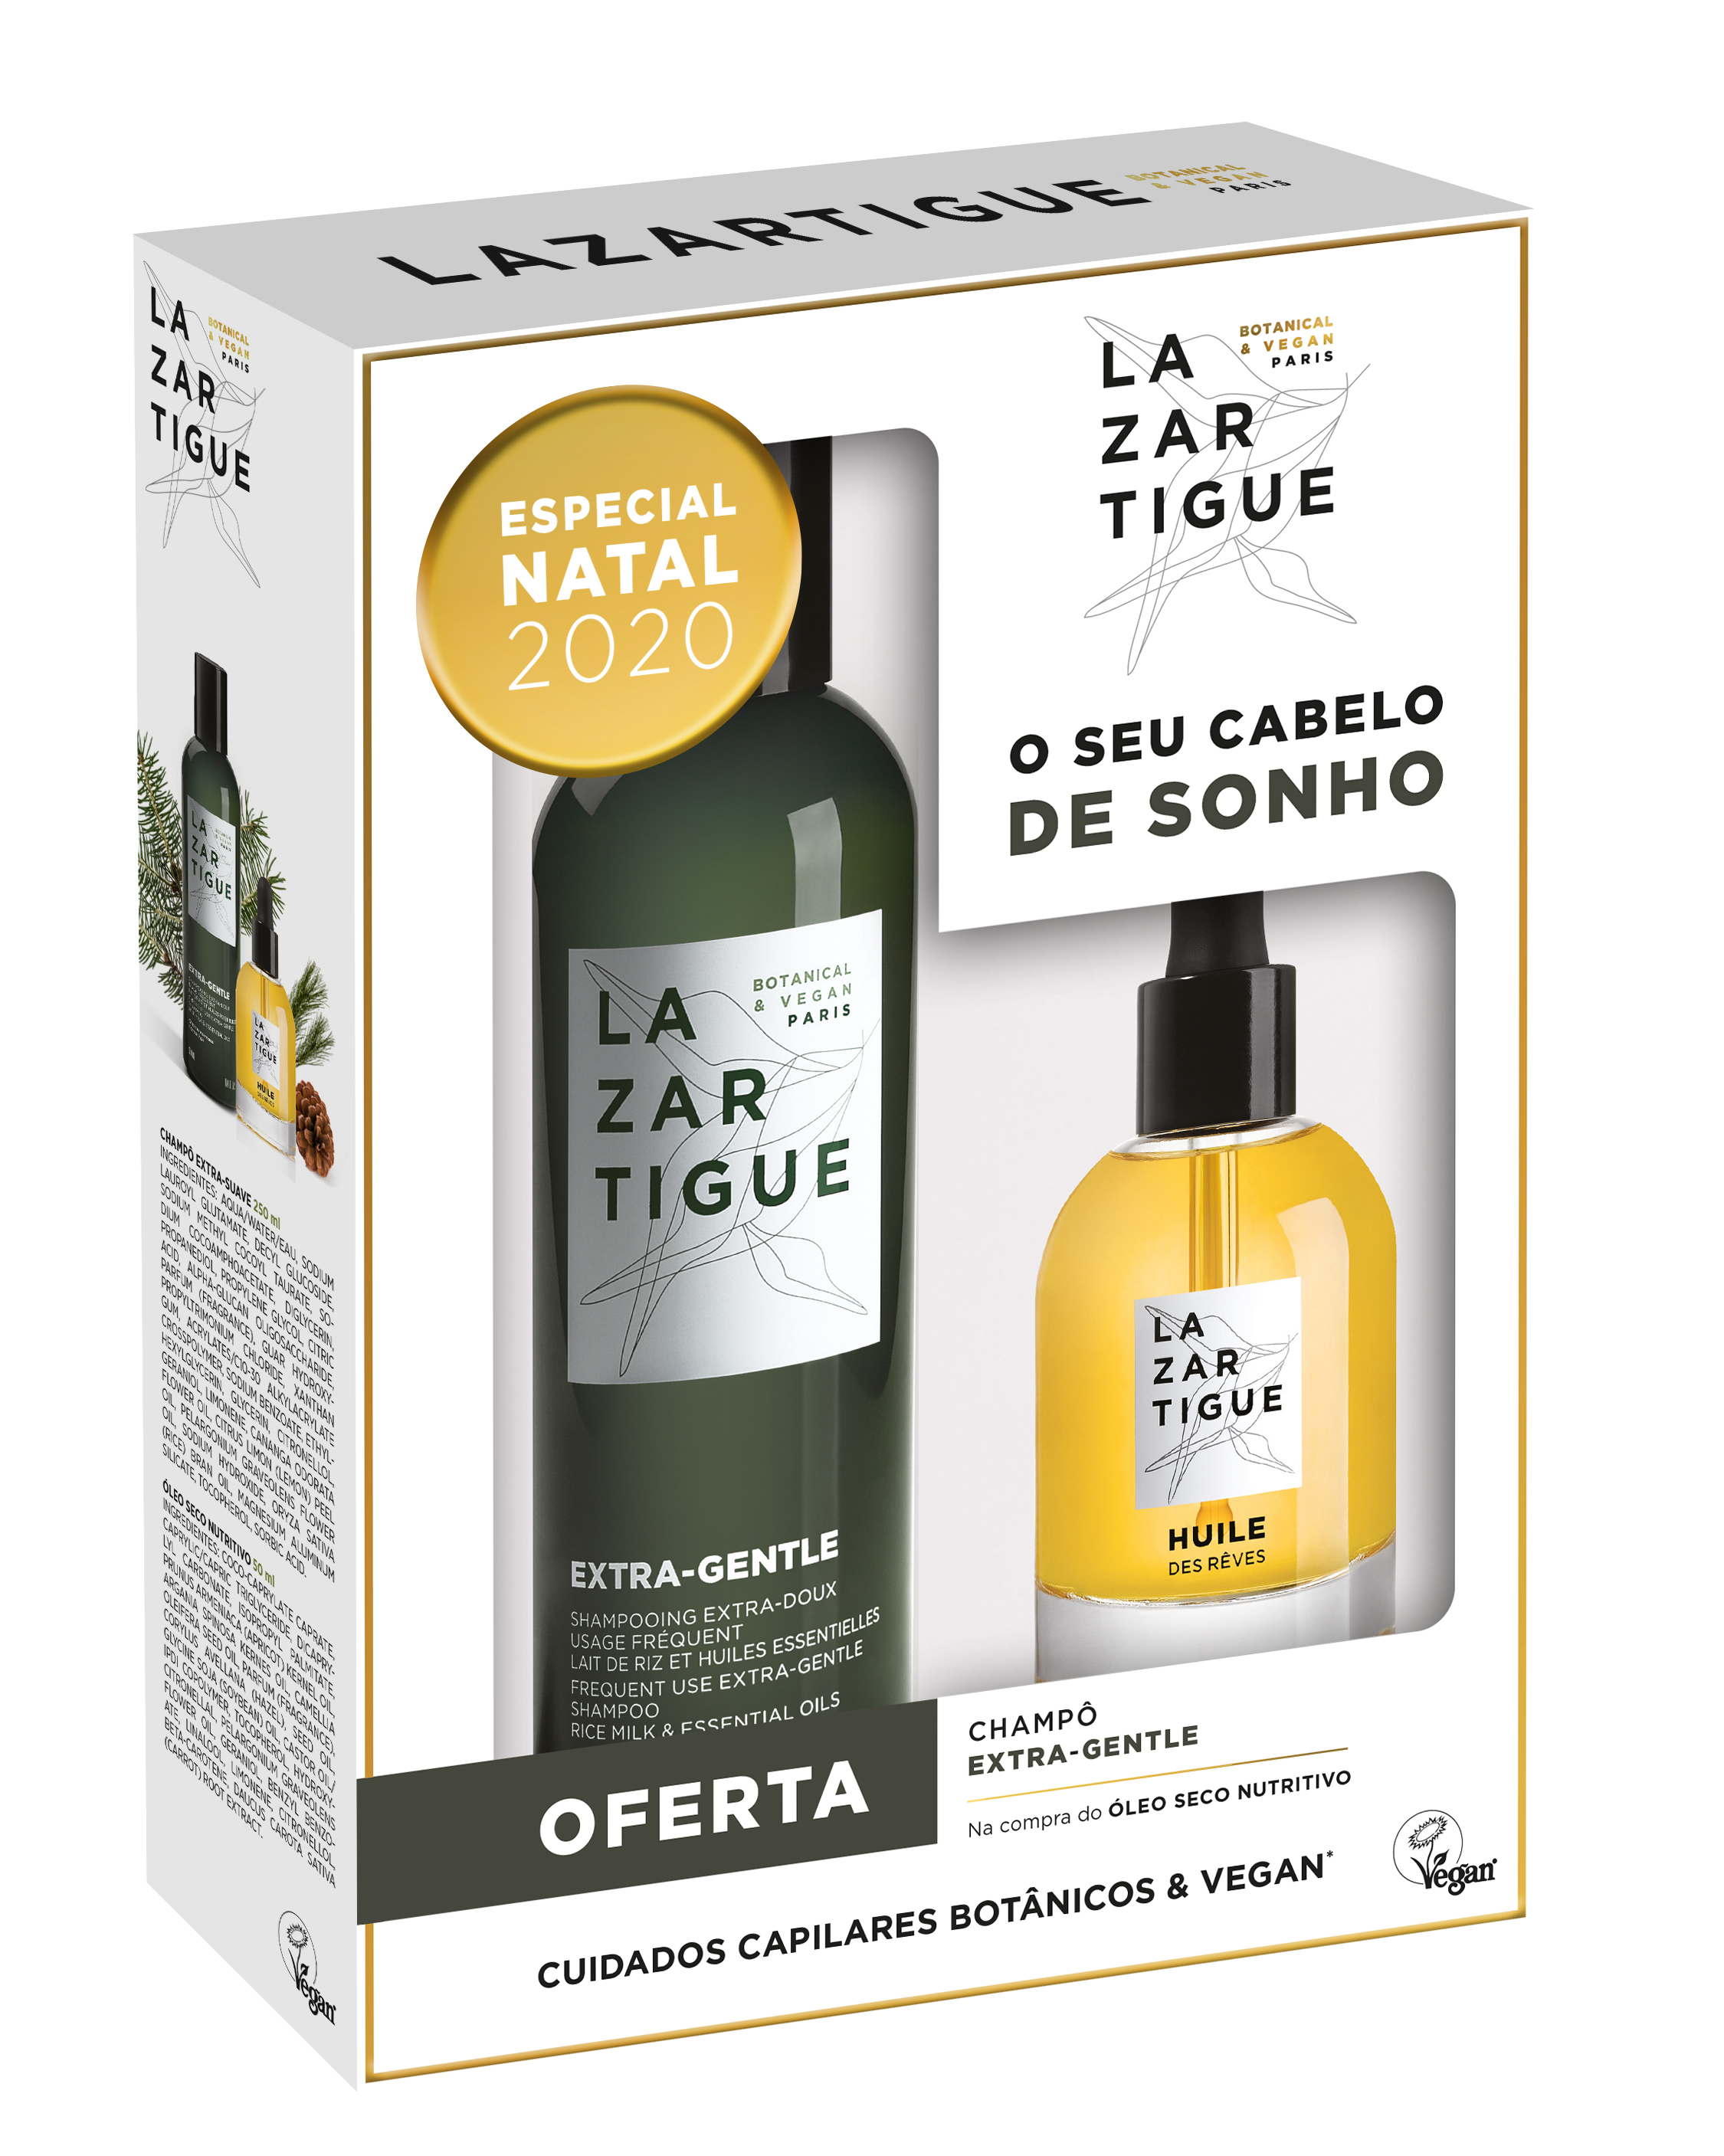 Kit Natal Lazartigue (oleo nutritivo Huile de Rêves + champô Extra-Gentle para uso frequente), €35